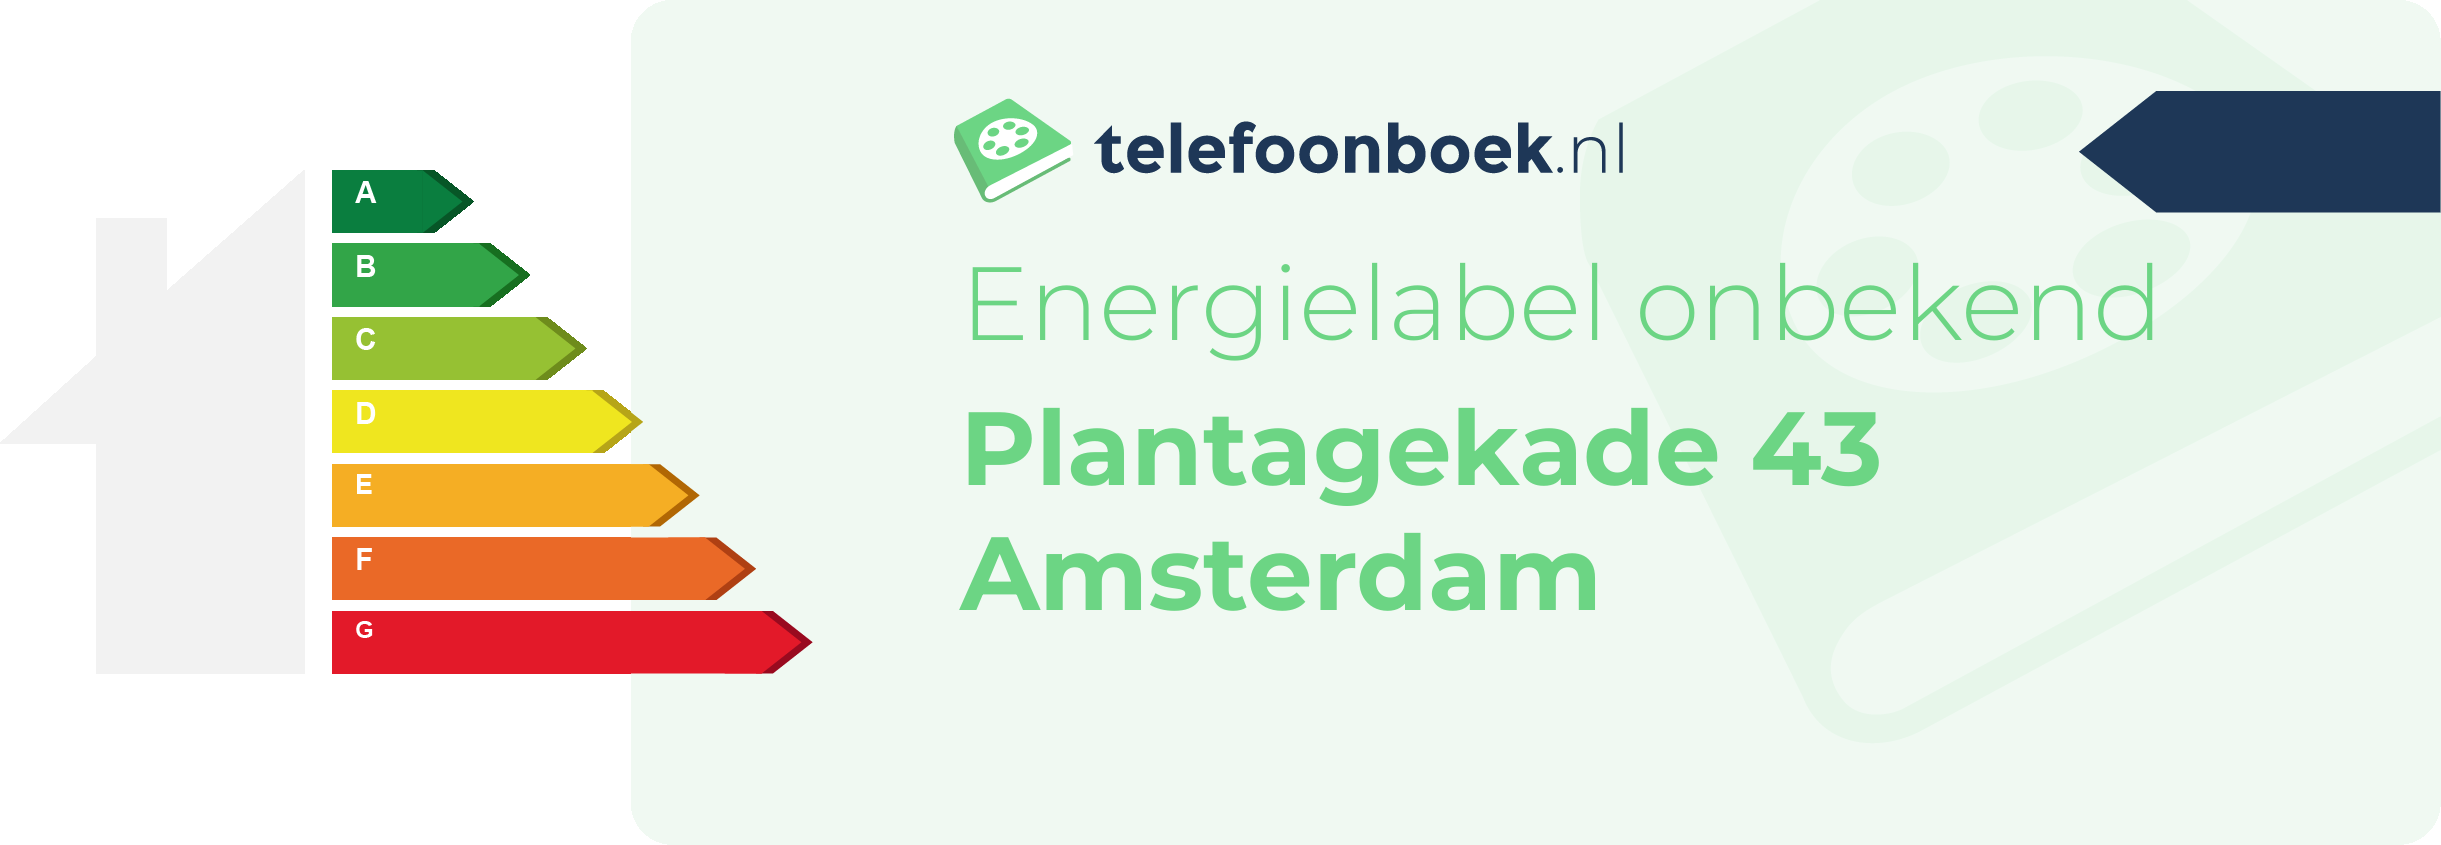 Energielabel Plantagekade 43 Amsterdam